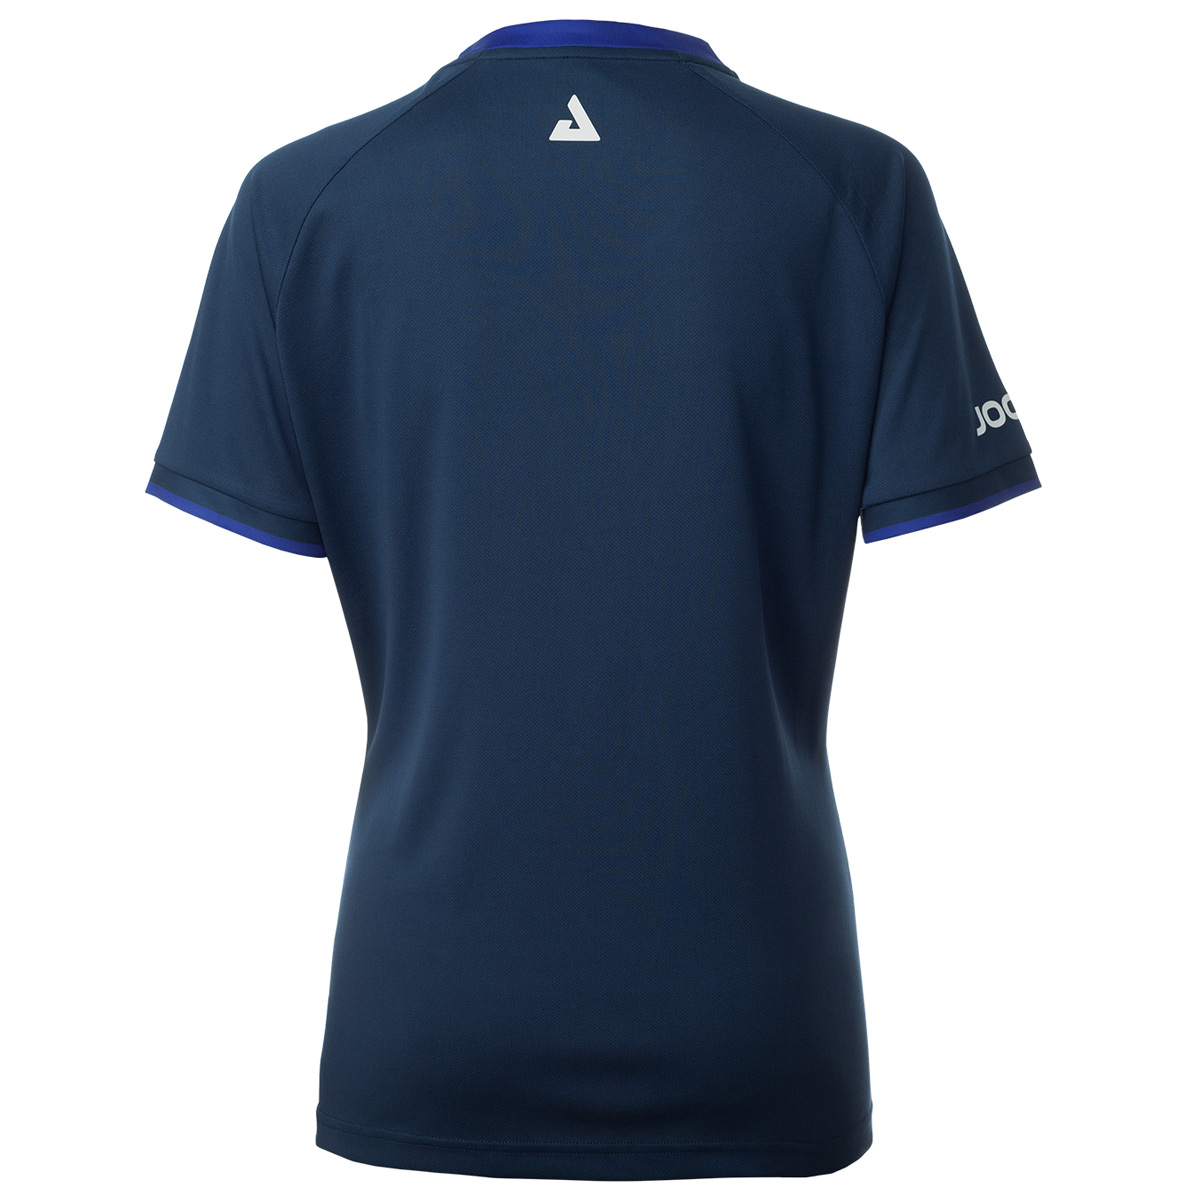 JOOLA Shirt Torrent Lady navy/blue XL